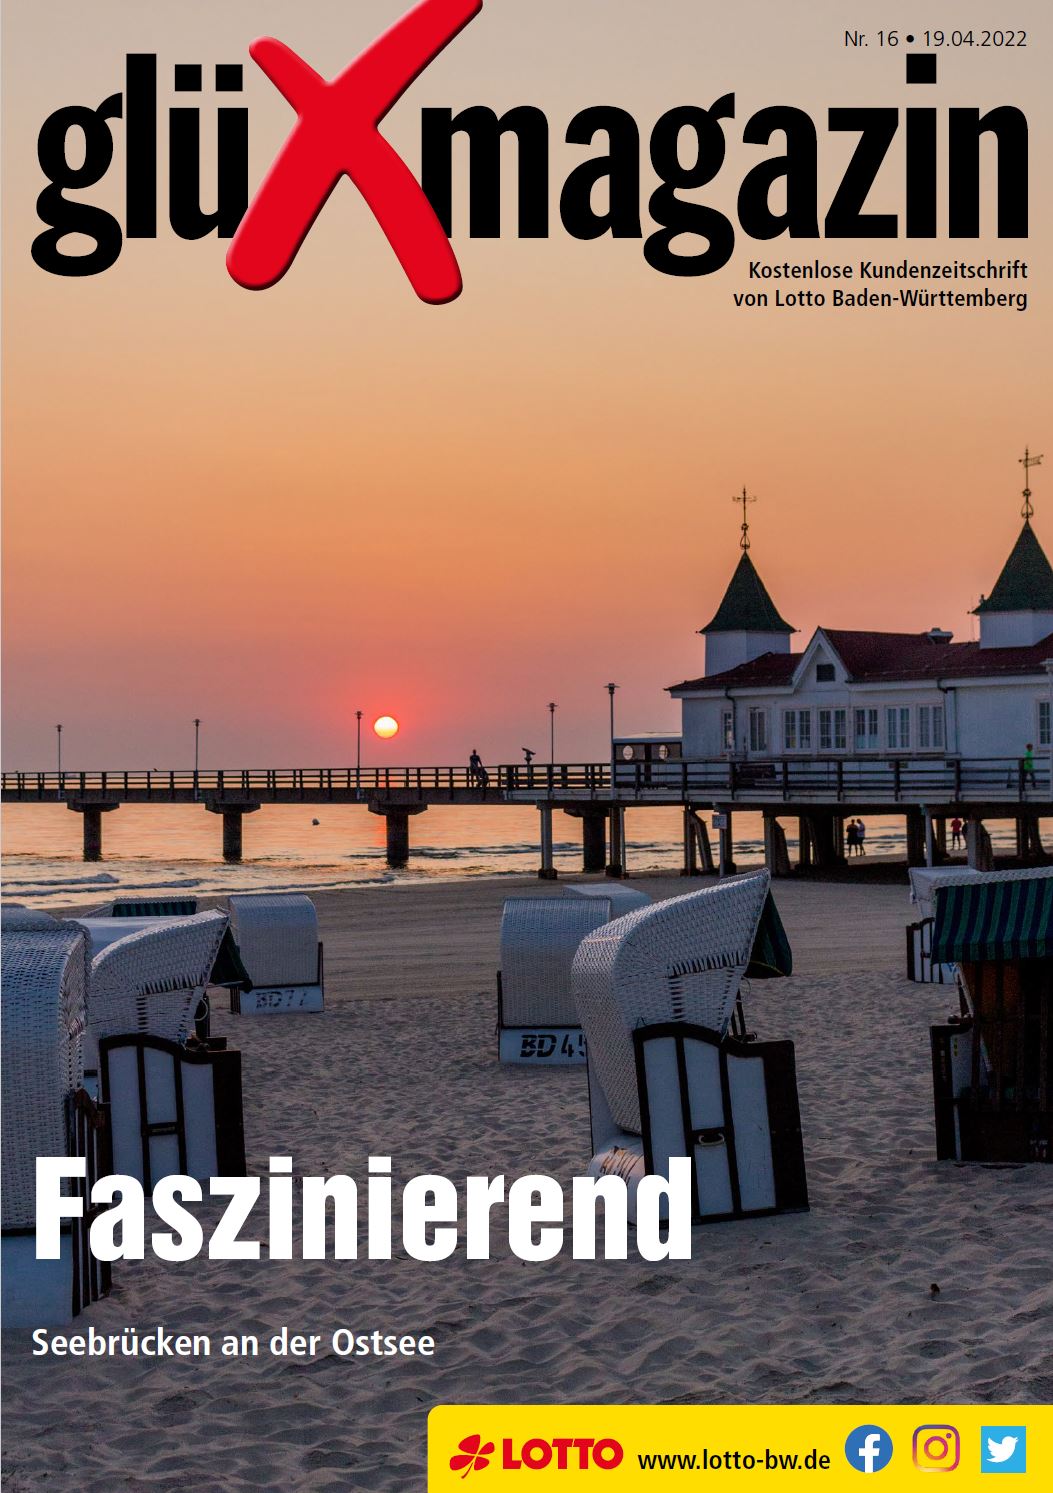 glüXmagazin Nr. 16 - 19.04.2022